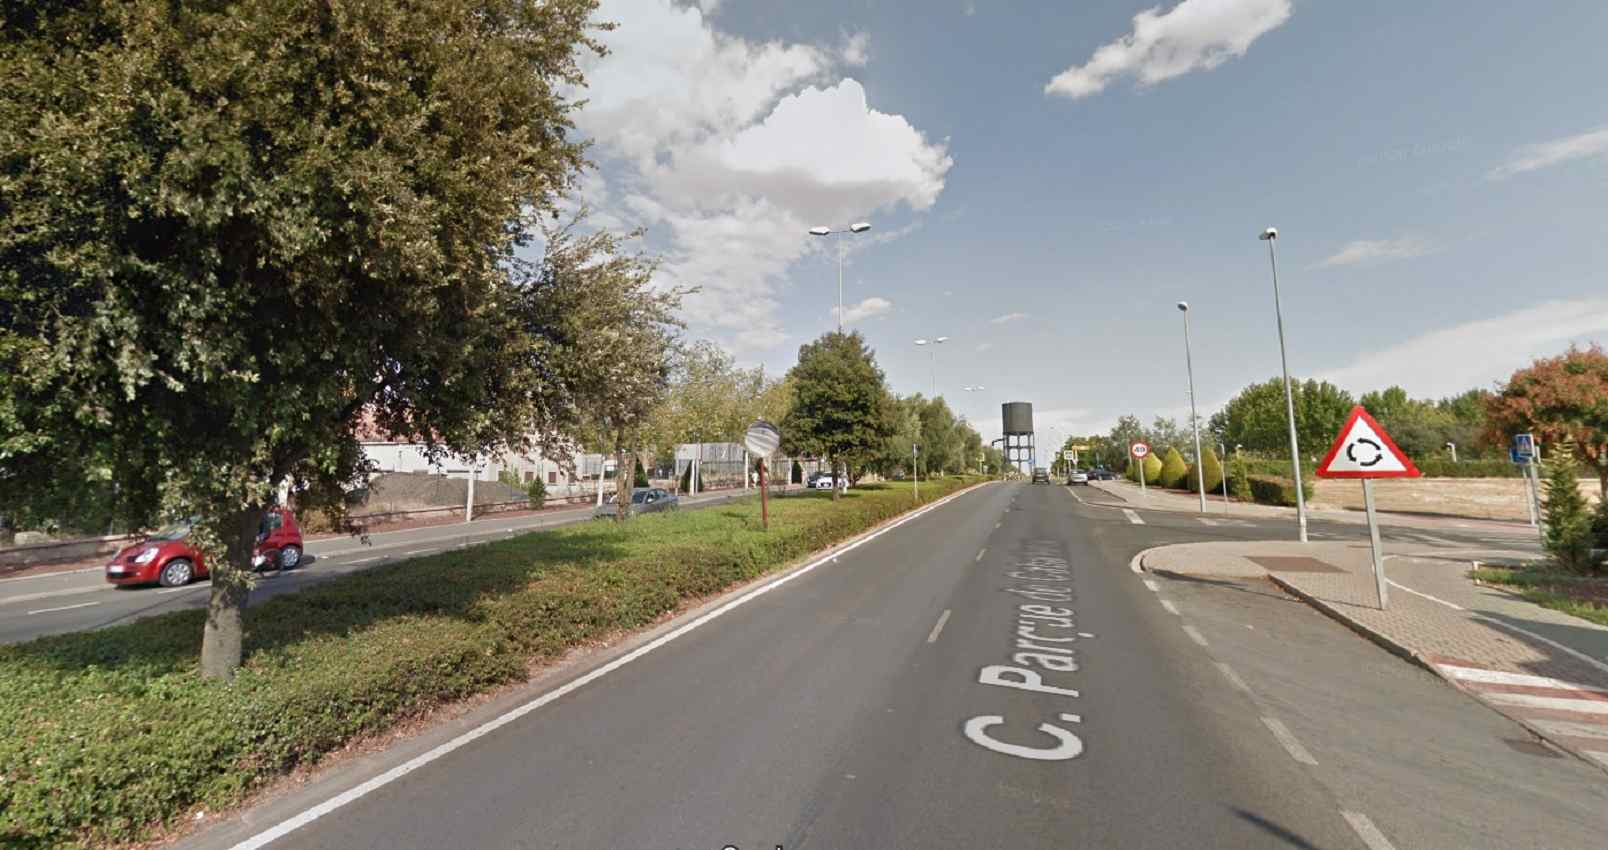 Avenida Parque Cabeñeros, donde se realizaban las competiciones de velocidad.